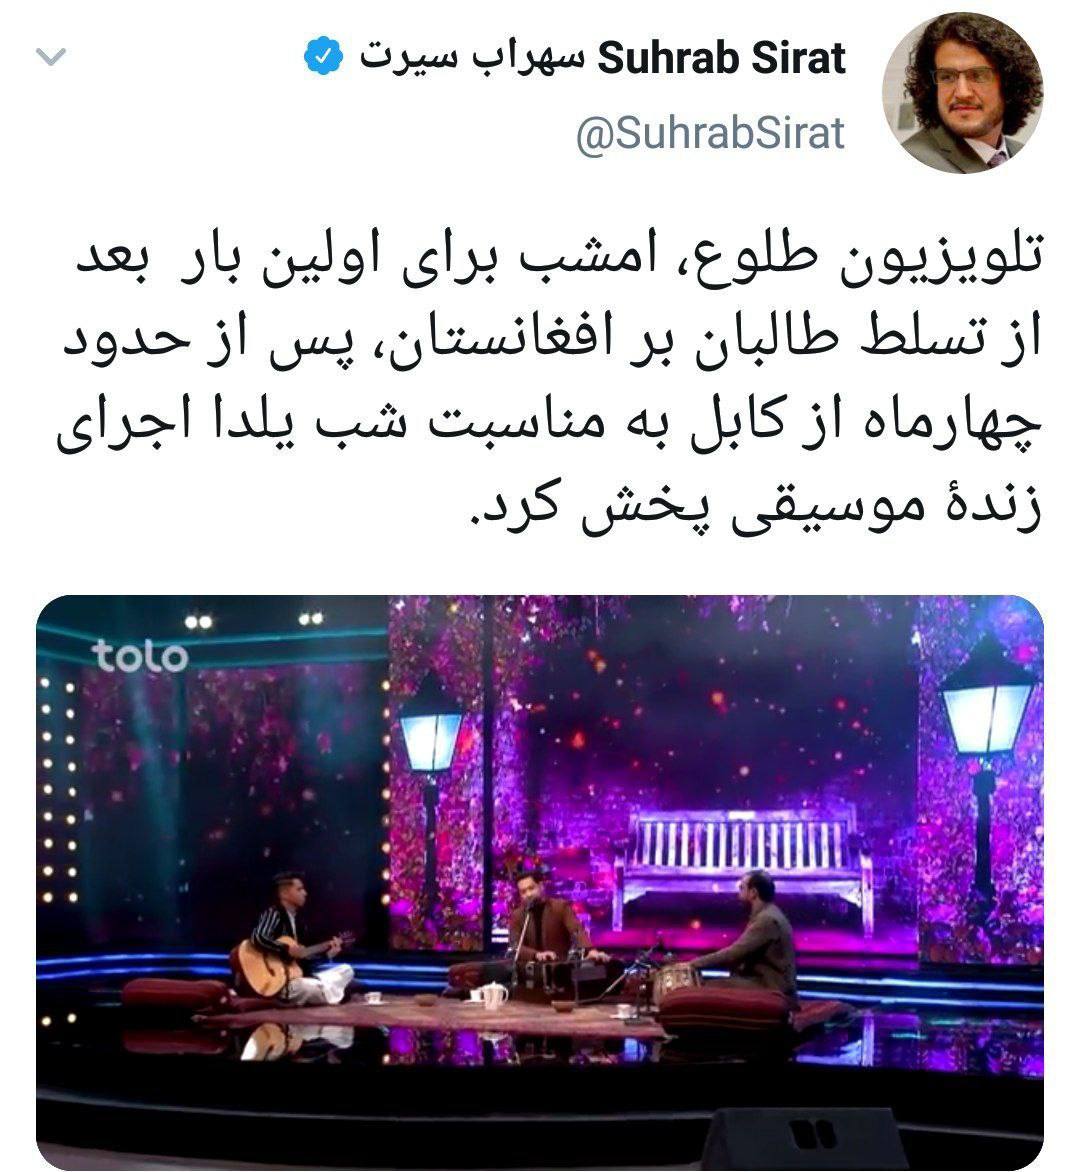 نمايش ساز در تلويزيون طالبان در شب يلدا